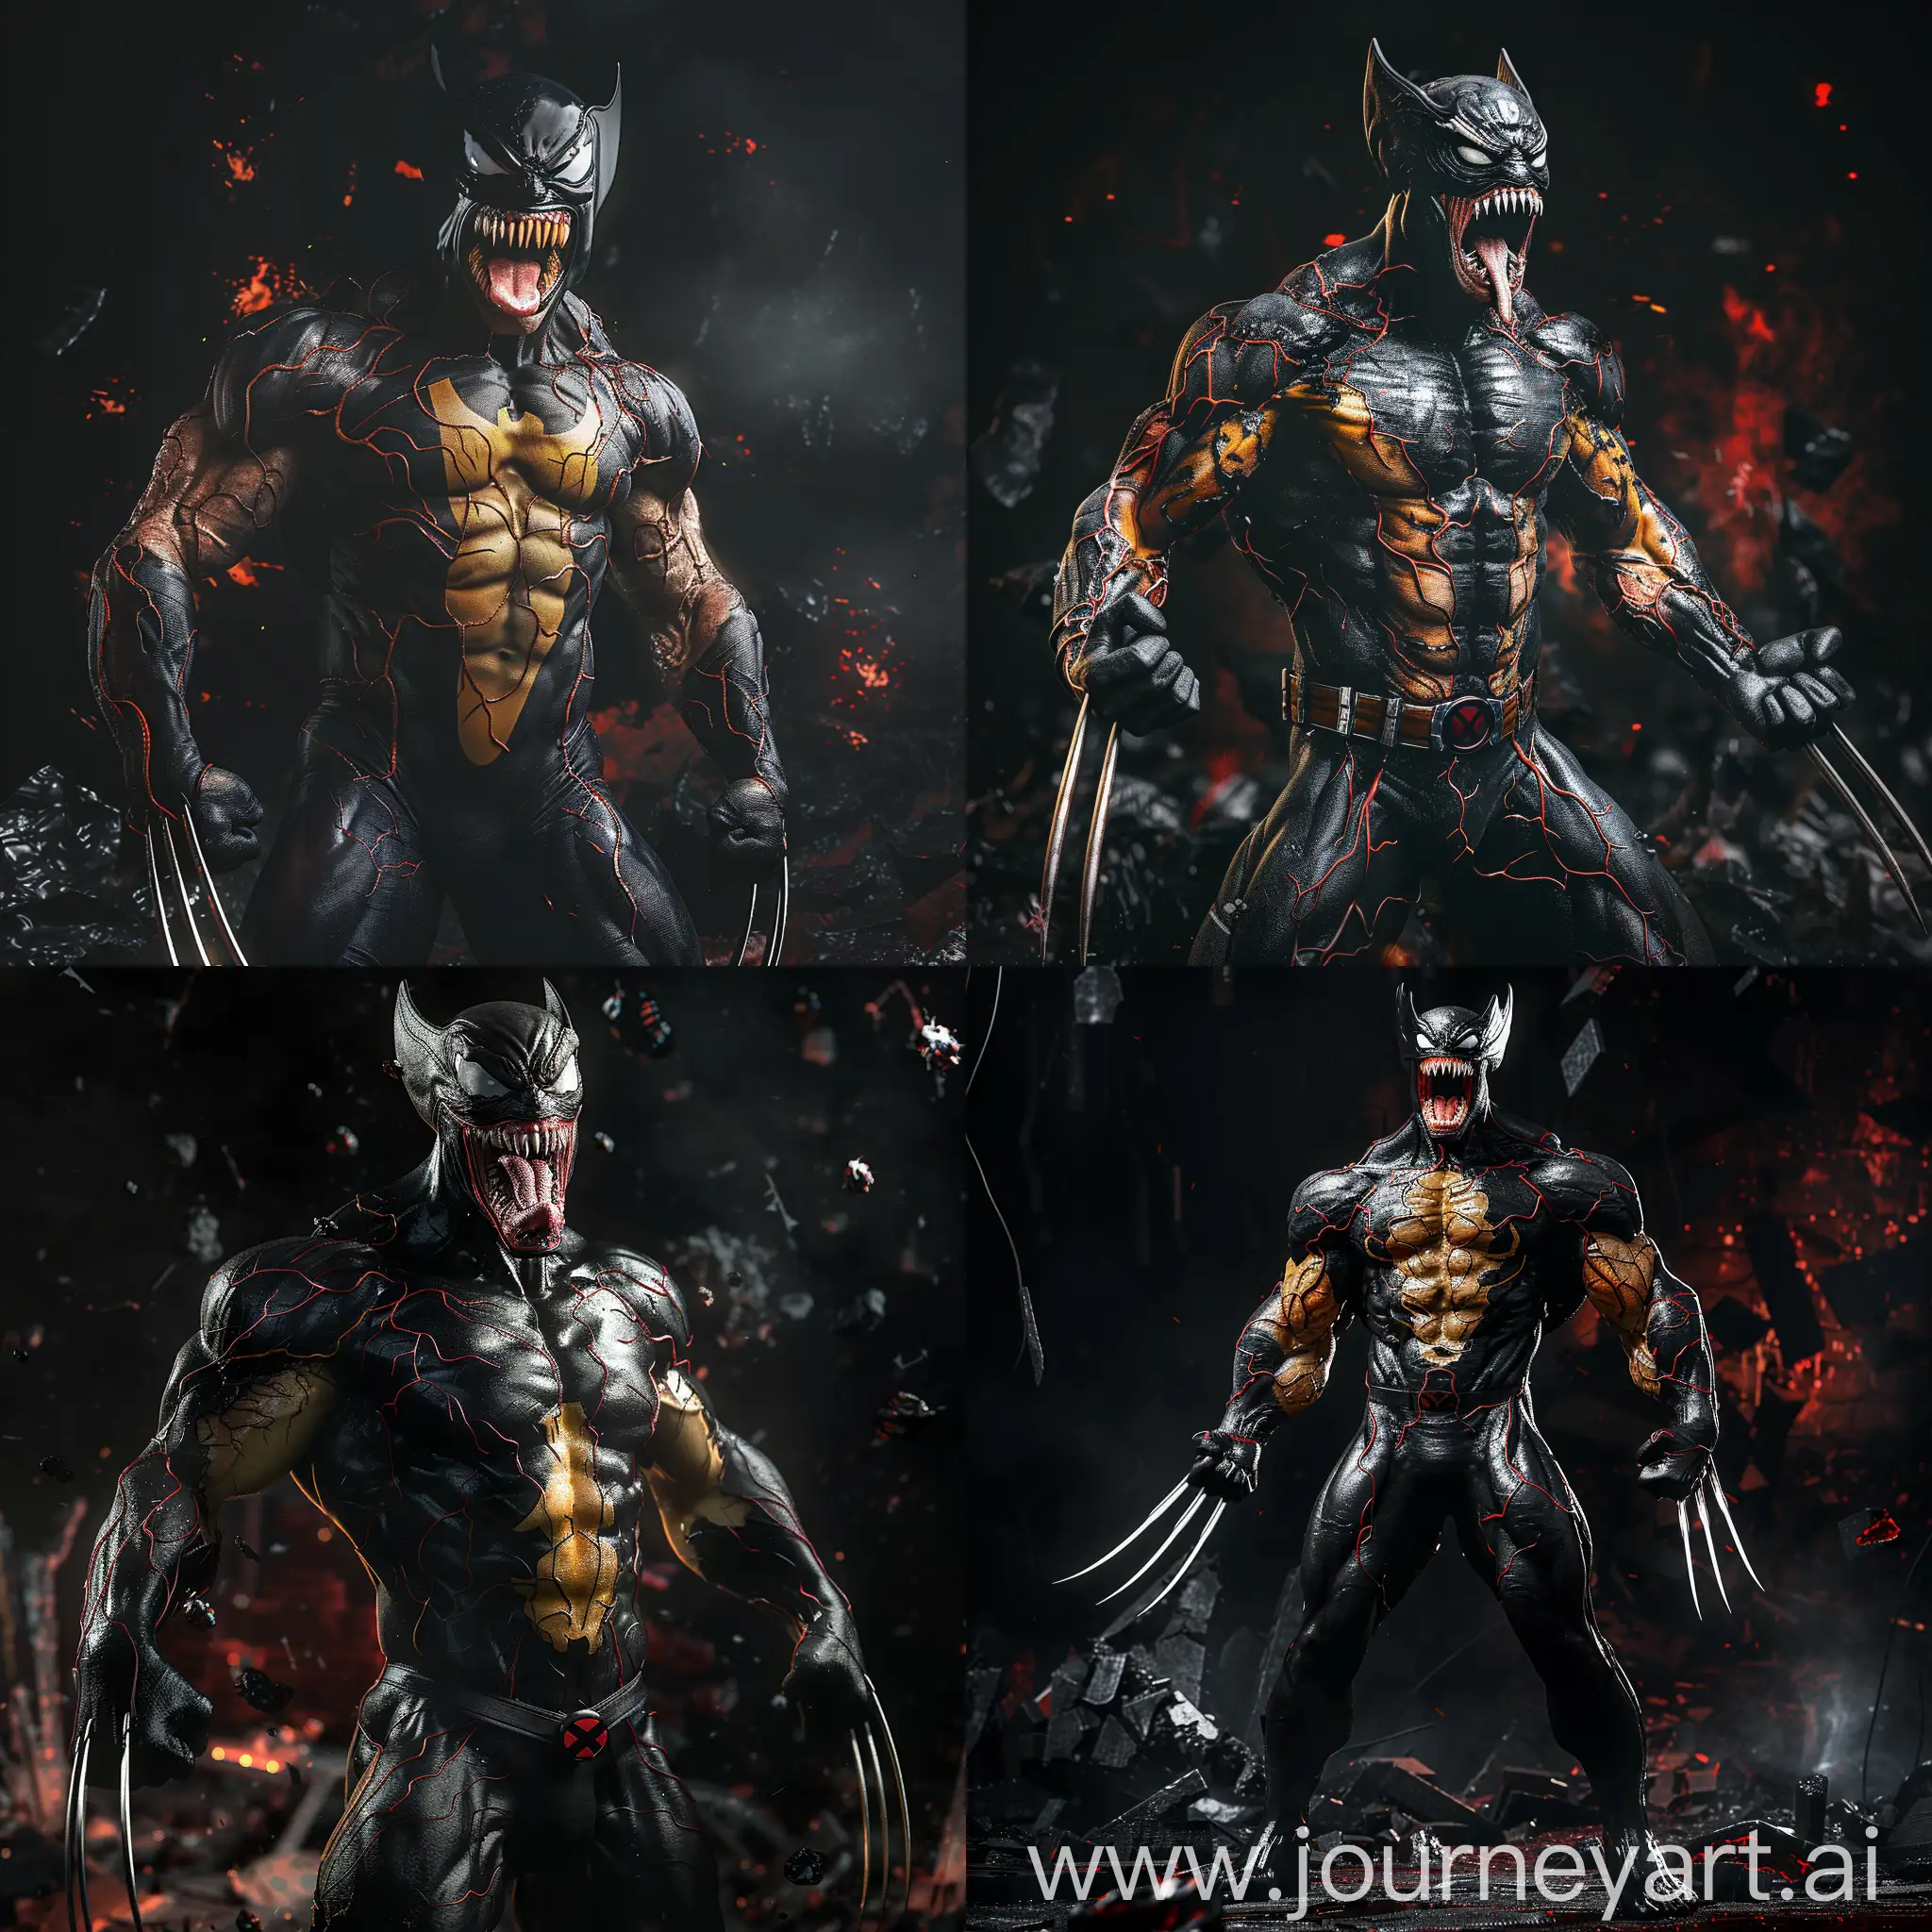 Dynamic-Marvel-Wolverine-vs-Venom-Intense-Superhero-Showdown